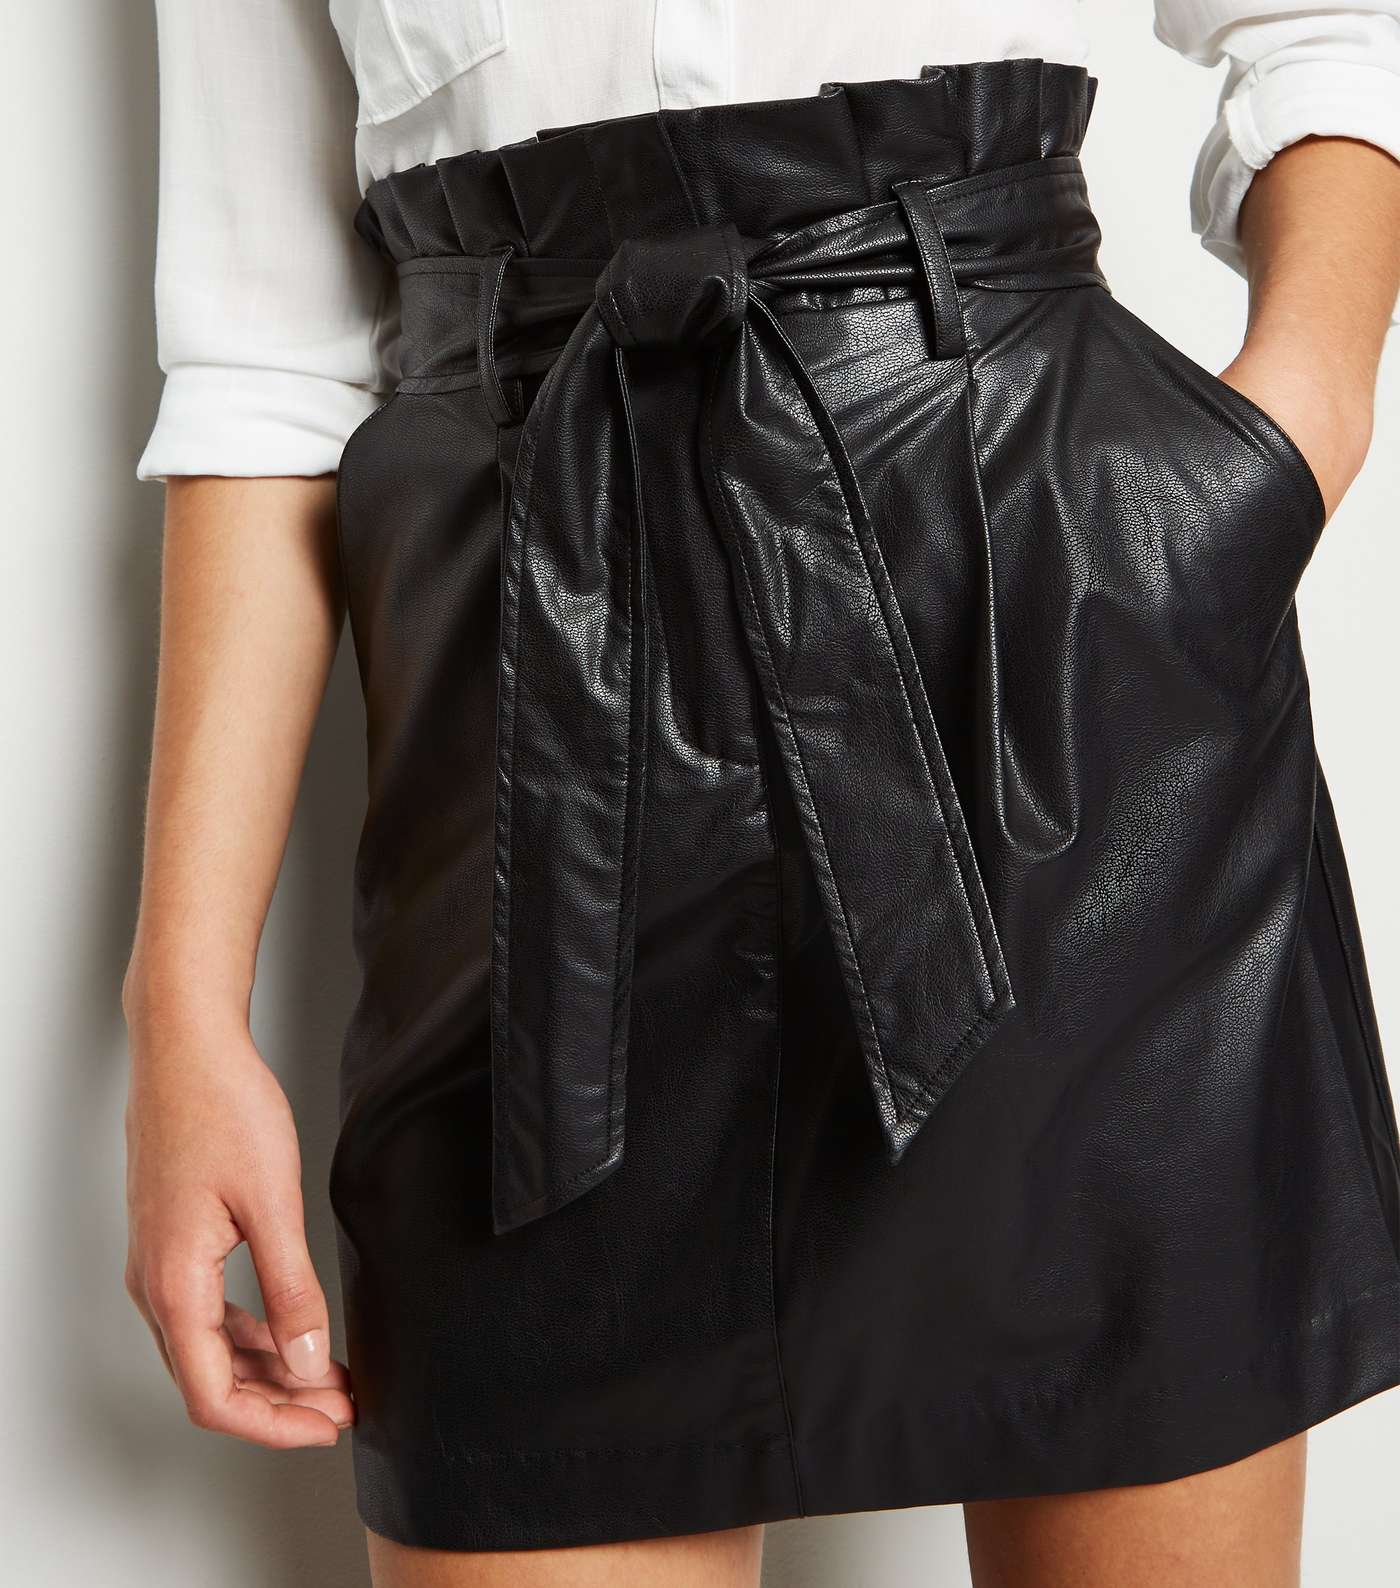 Black Leather-Look High Waist Mini Skirt Image 2